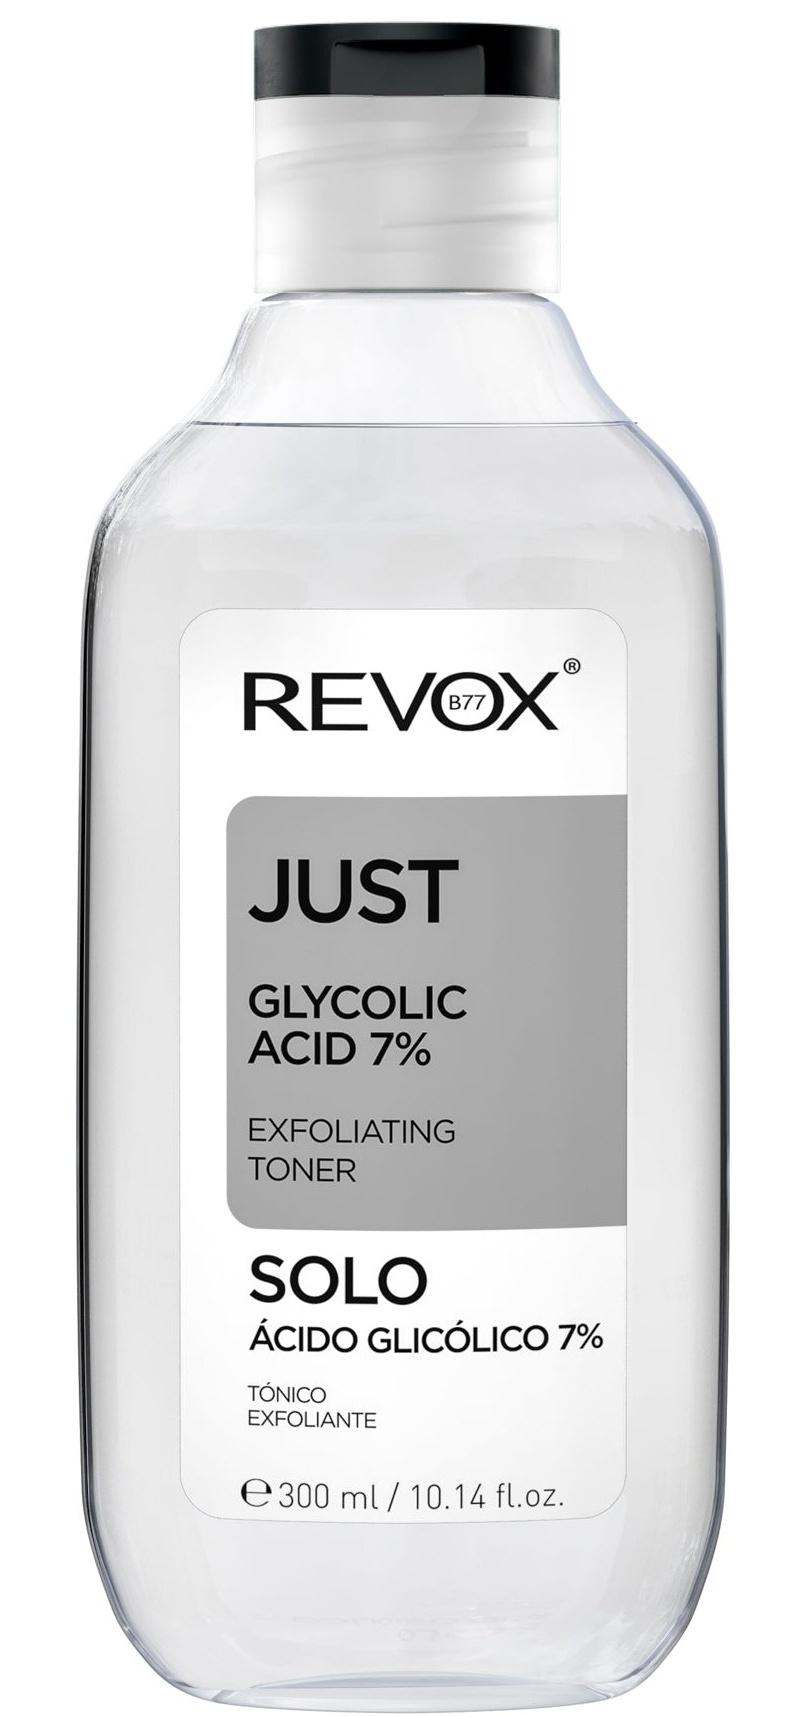 Revox Just Glycolic Acid 7% Exfoliating Toner